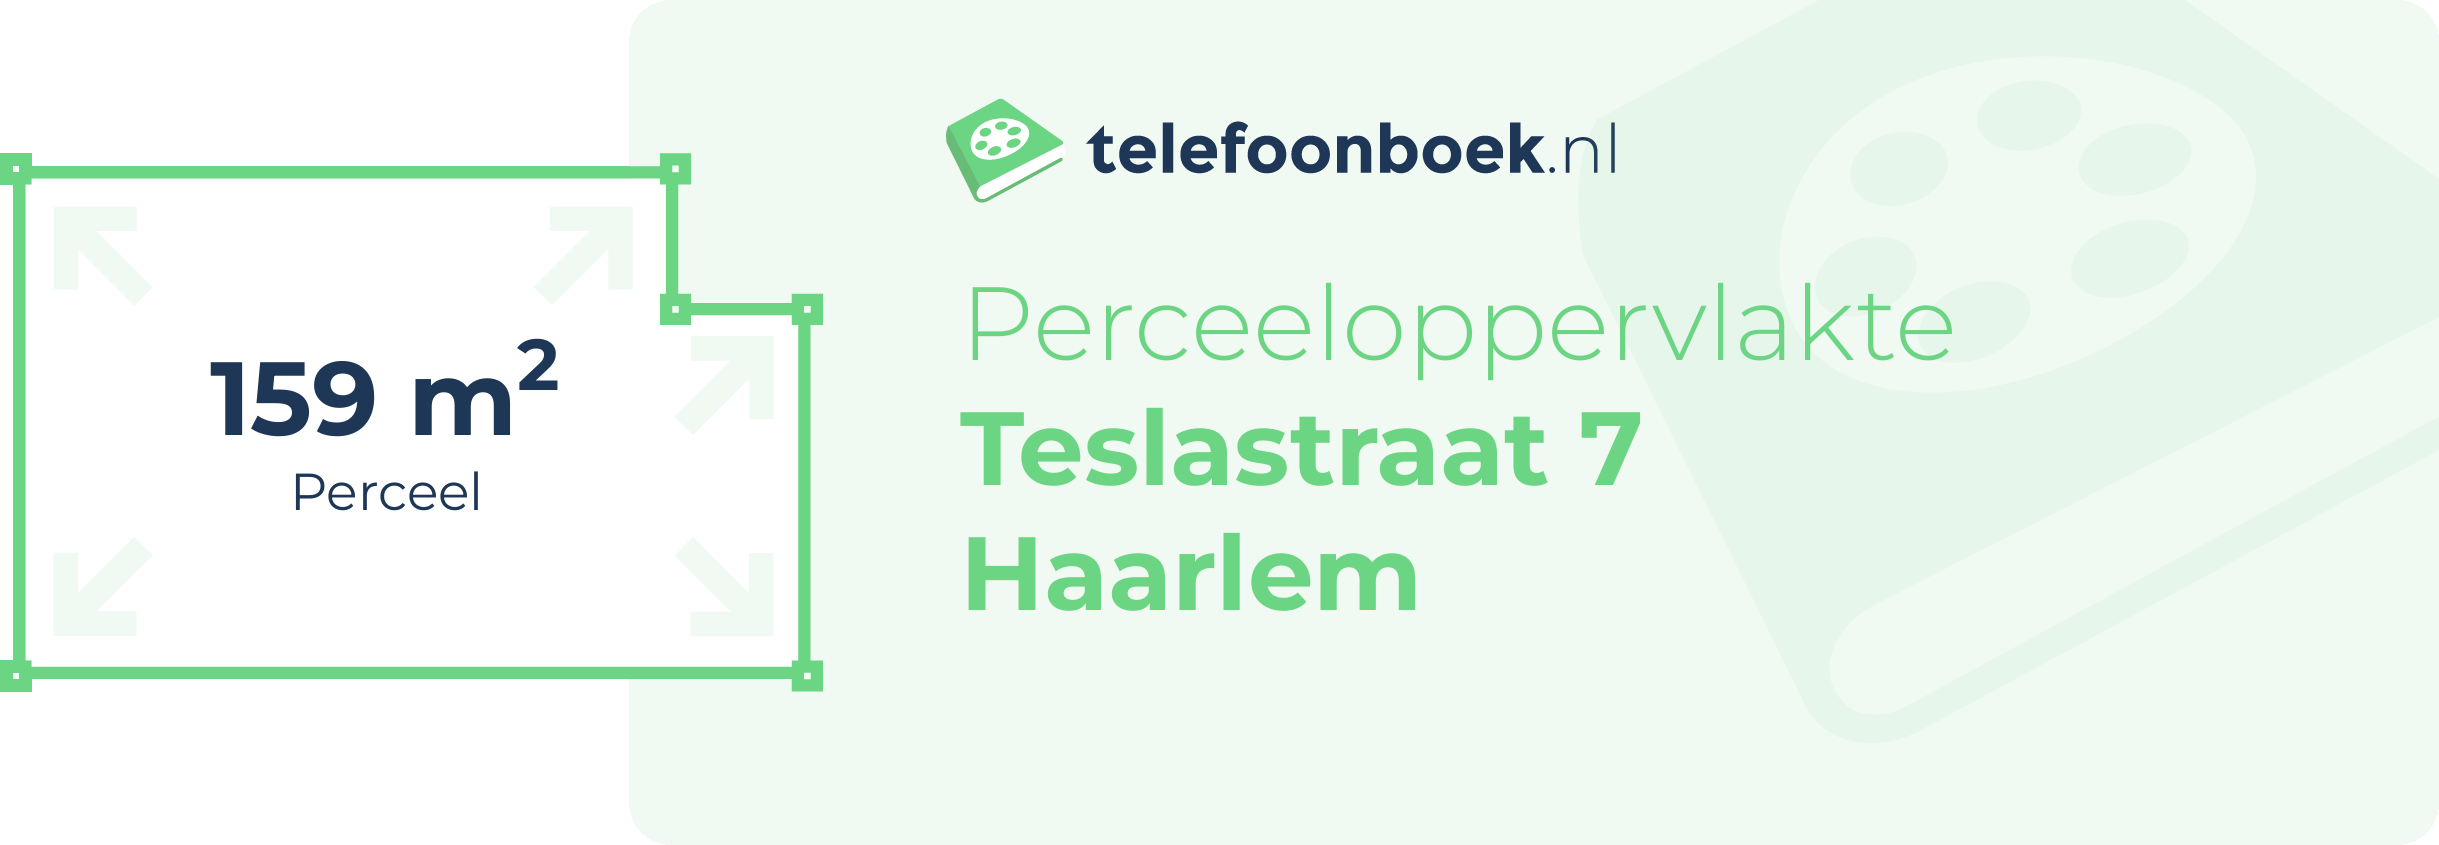 Perceeloppervlakte Teslastraat 7 Haarlem